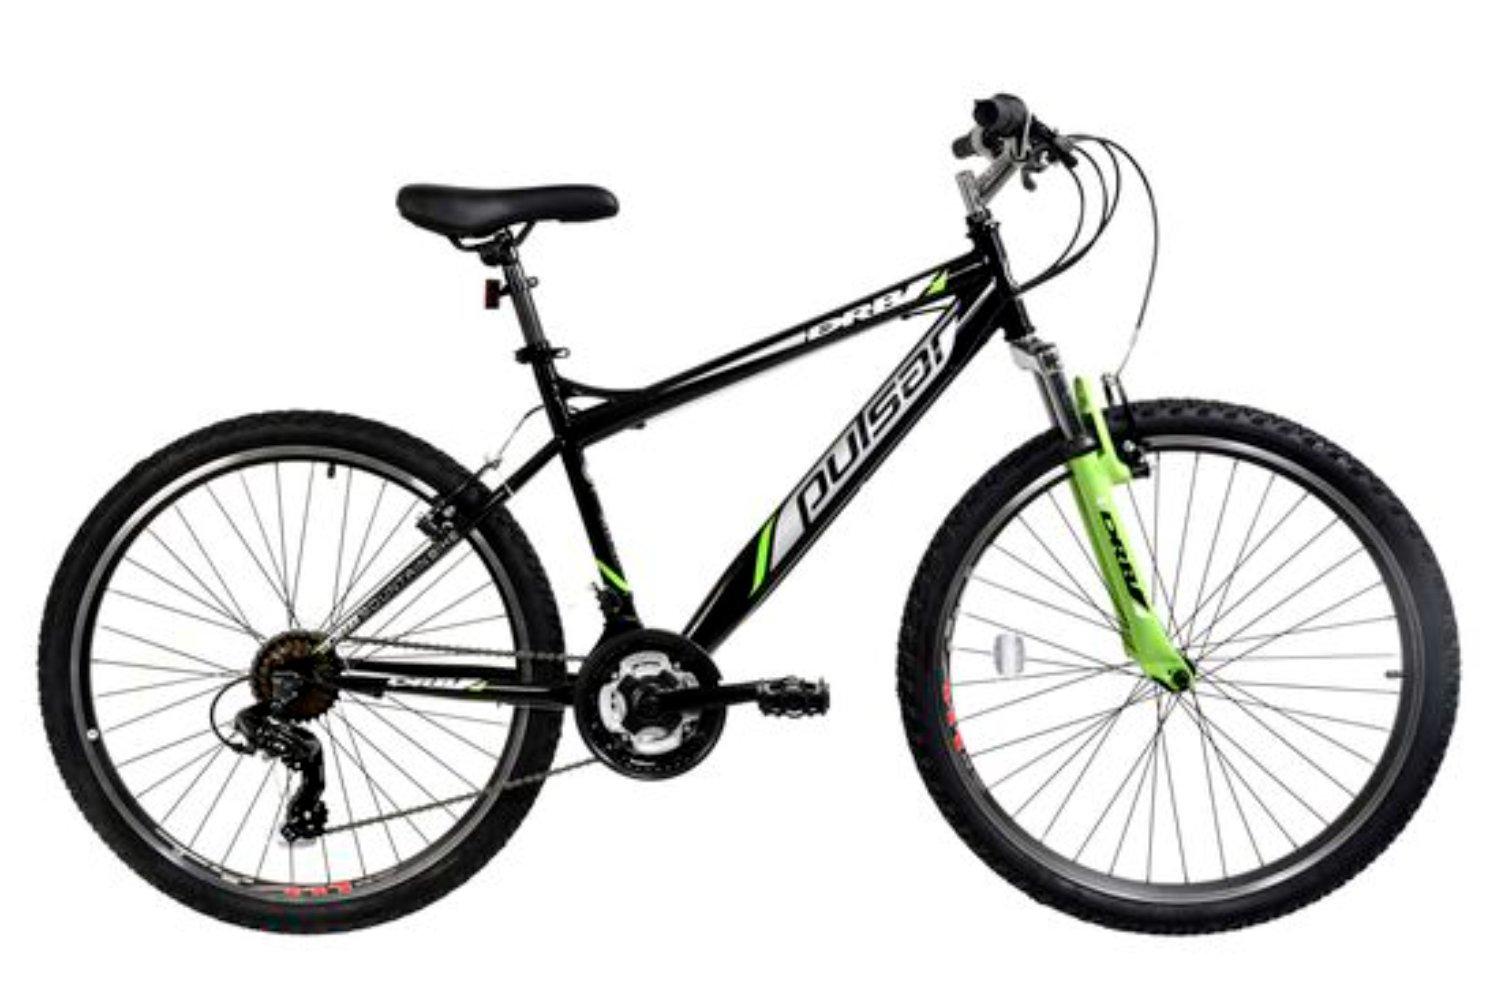 Pulsar Hardtail Mountain Bike, 26in Wheel - Black/Green